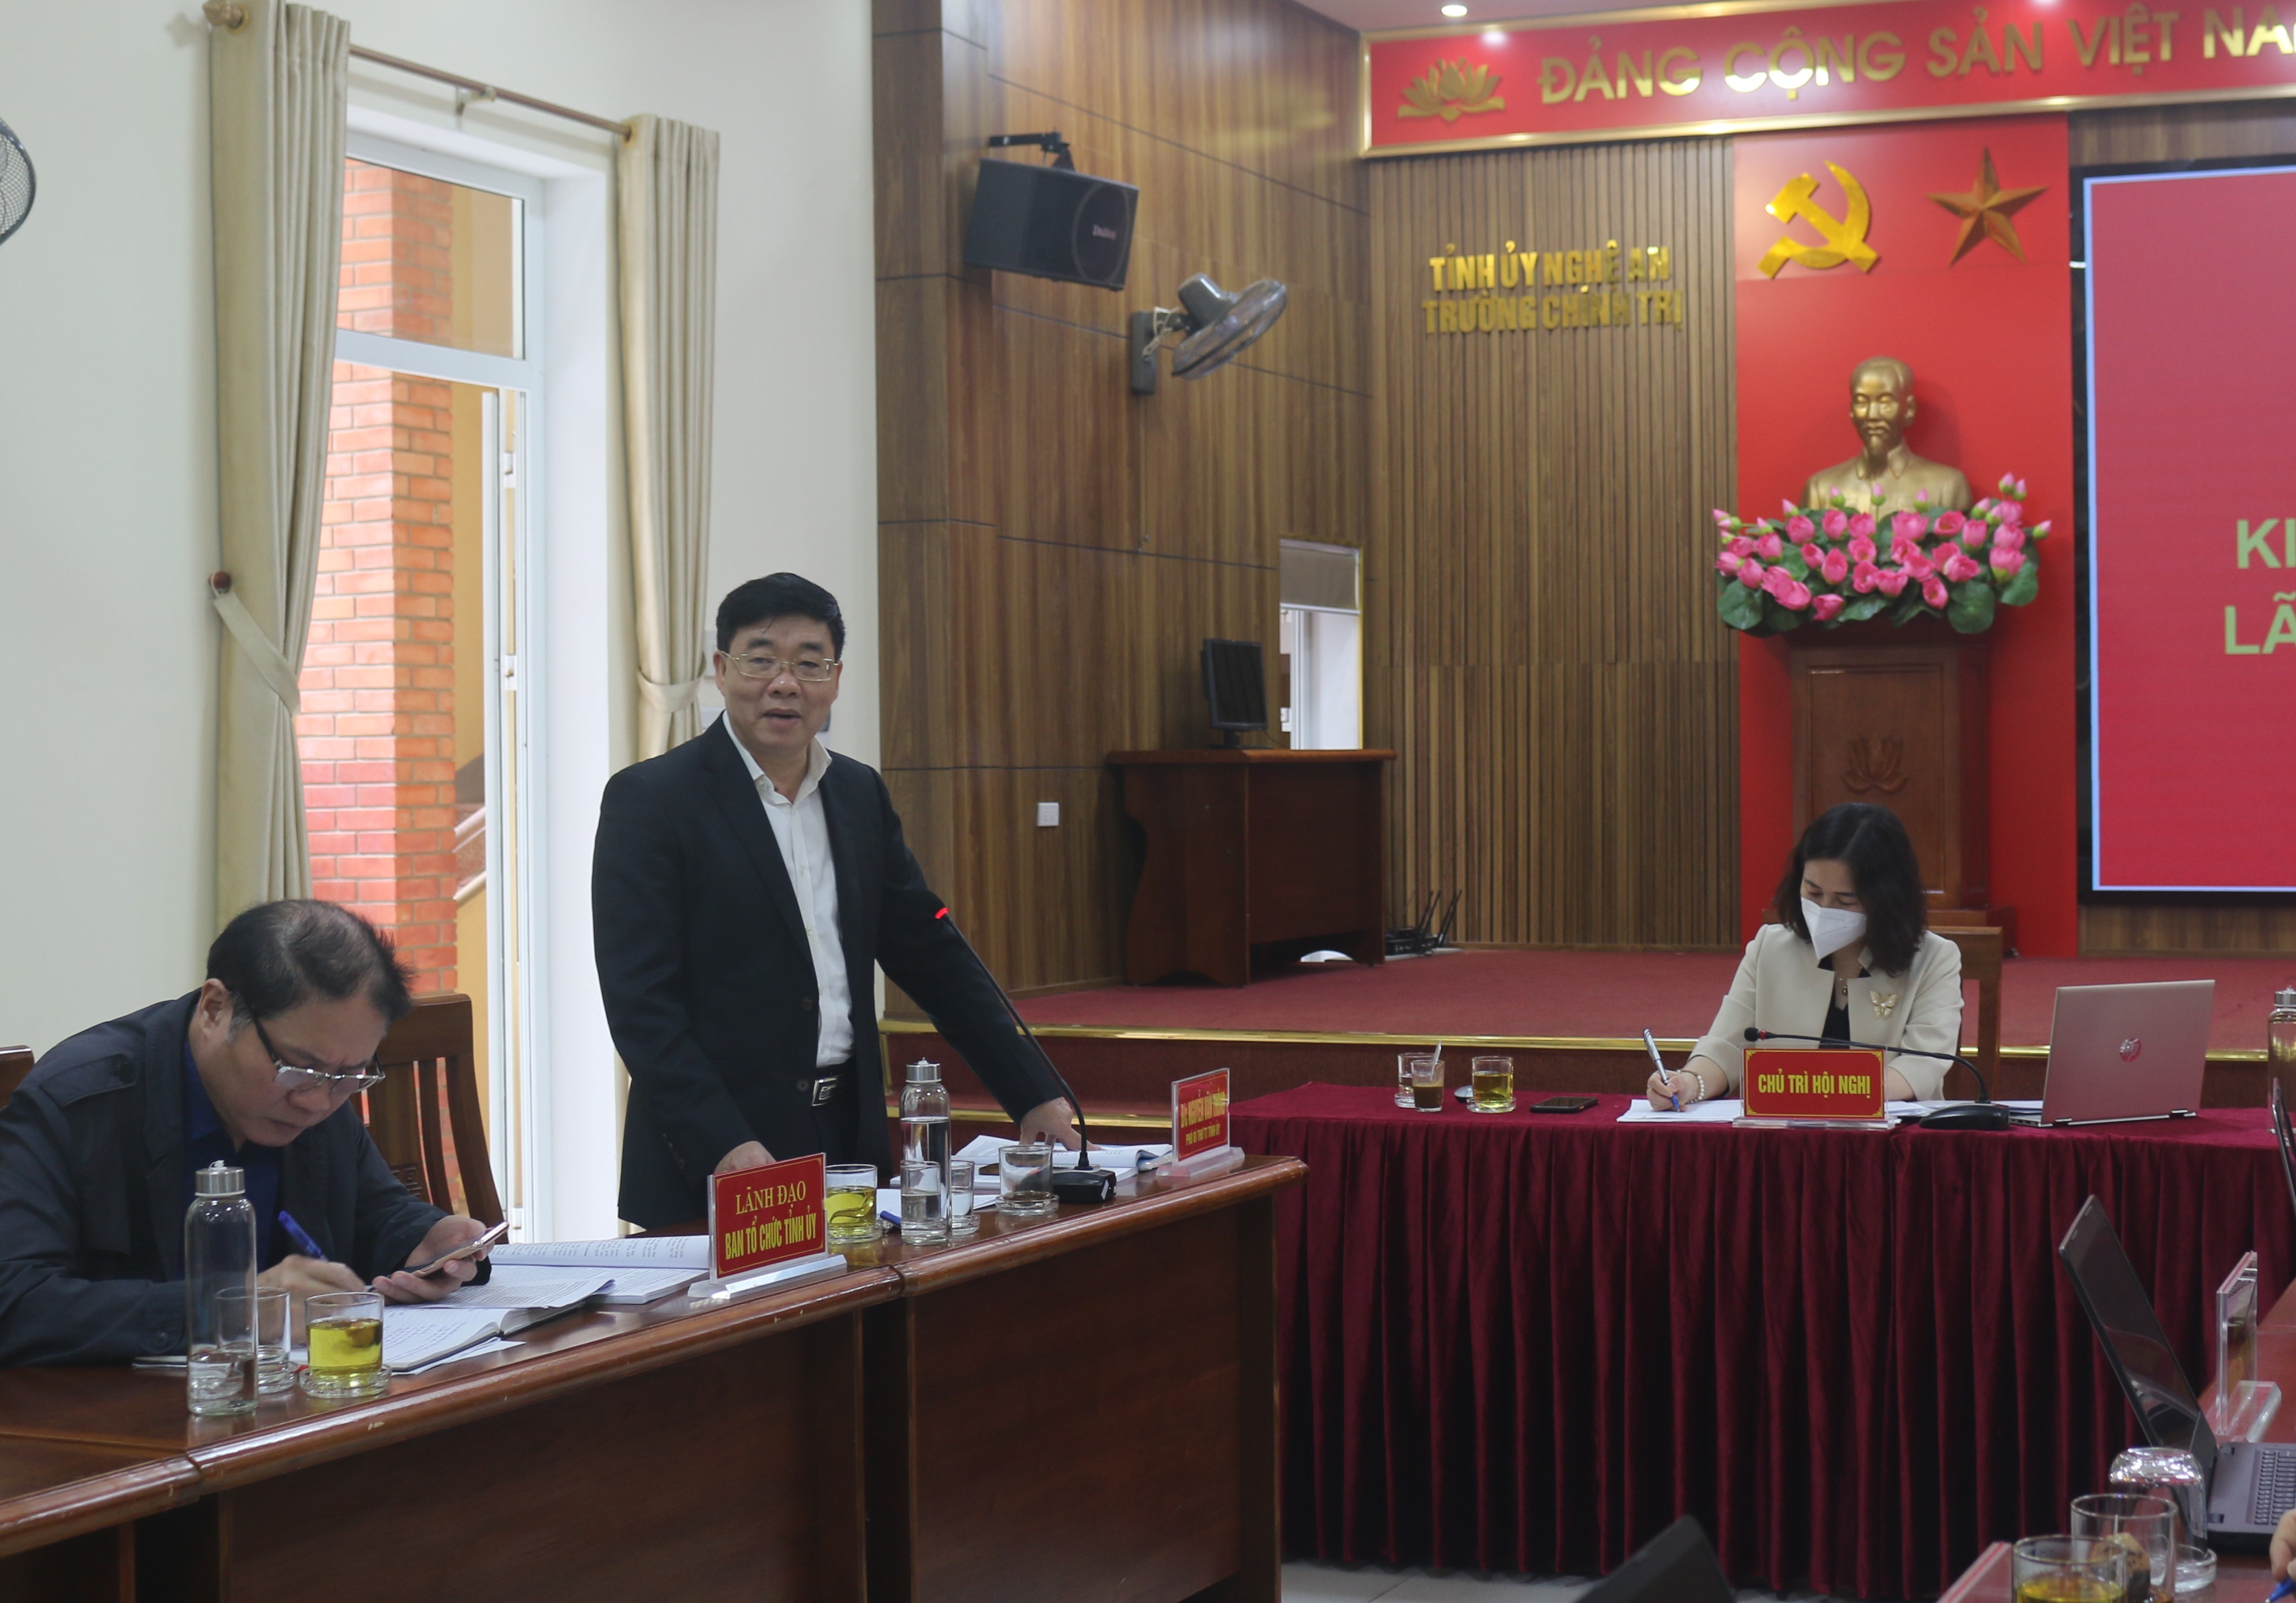 Trường Chính trị tỉnh Nghệ An tổ chức Hội nghị kiểm điểm tập thể, cá nhân lãnh đạo, quản lý năm 2021